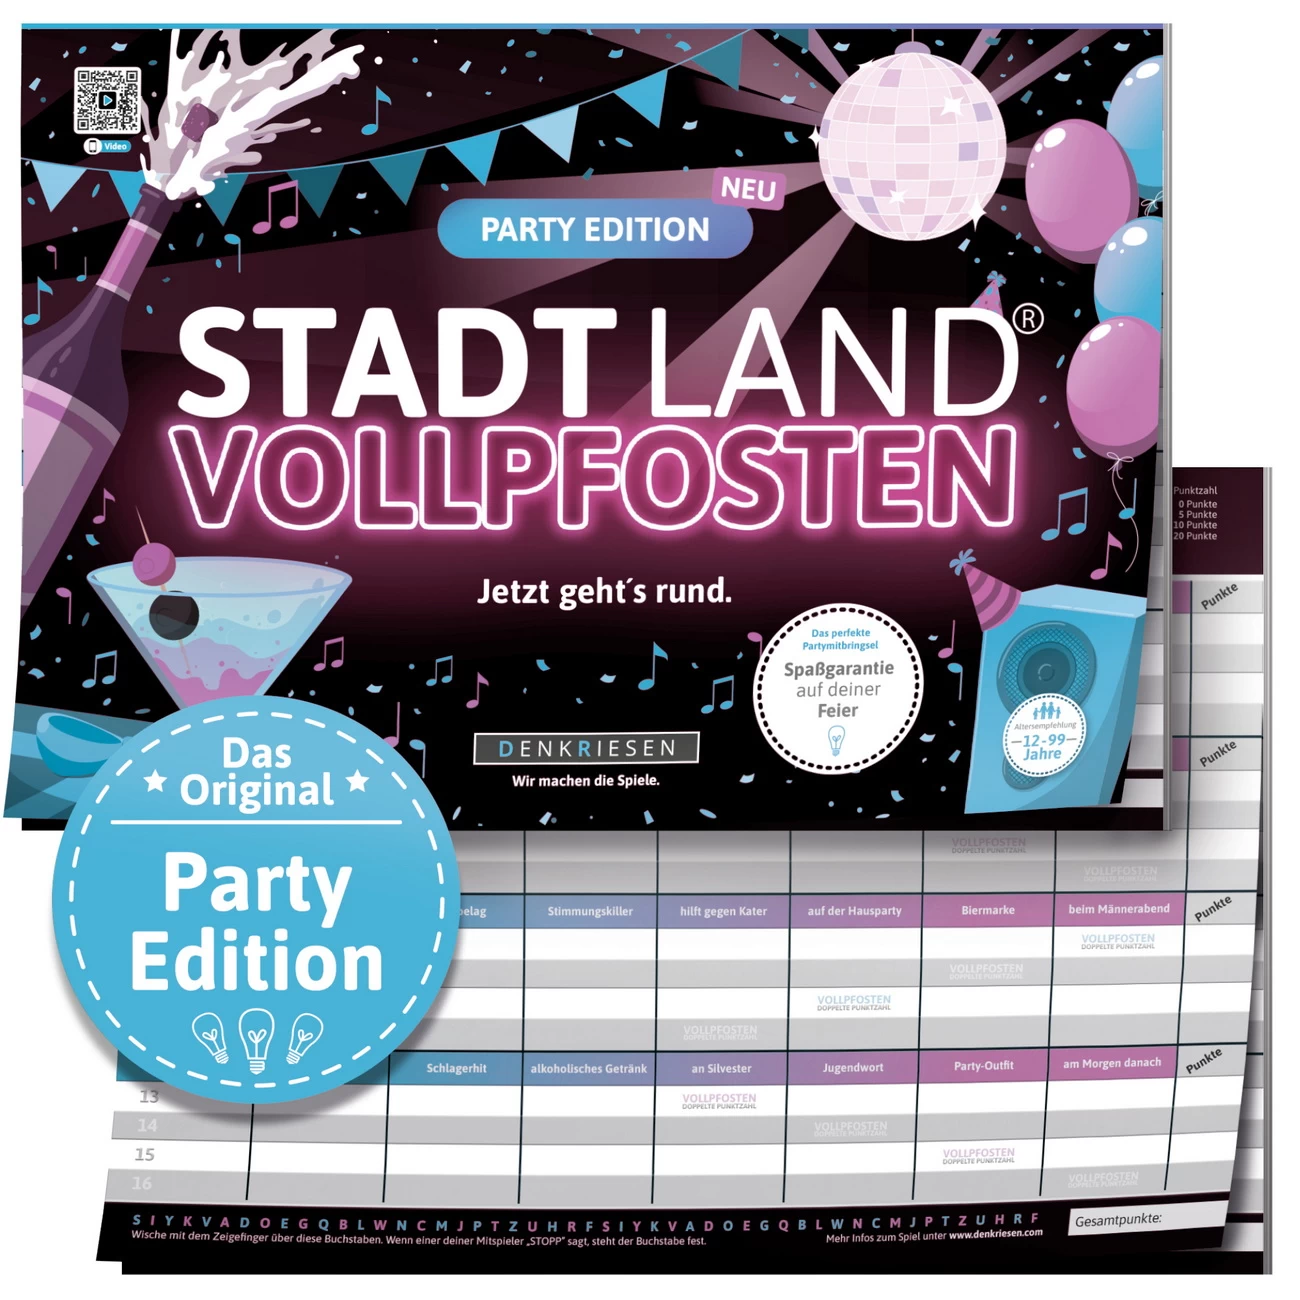 Party Edition - STADT LAND VOLLPFOSTEN (DENKRIESEN)